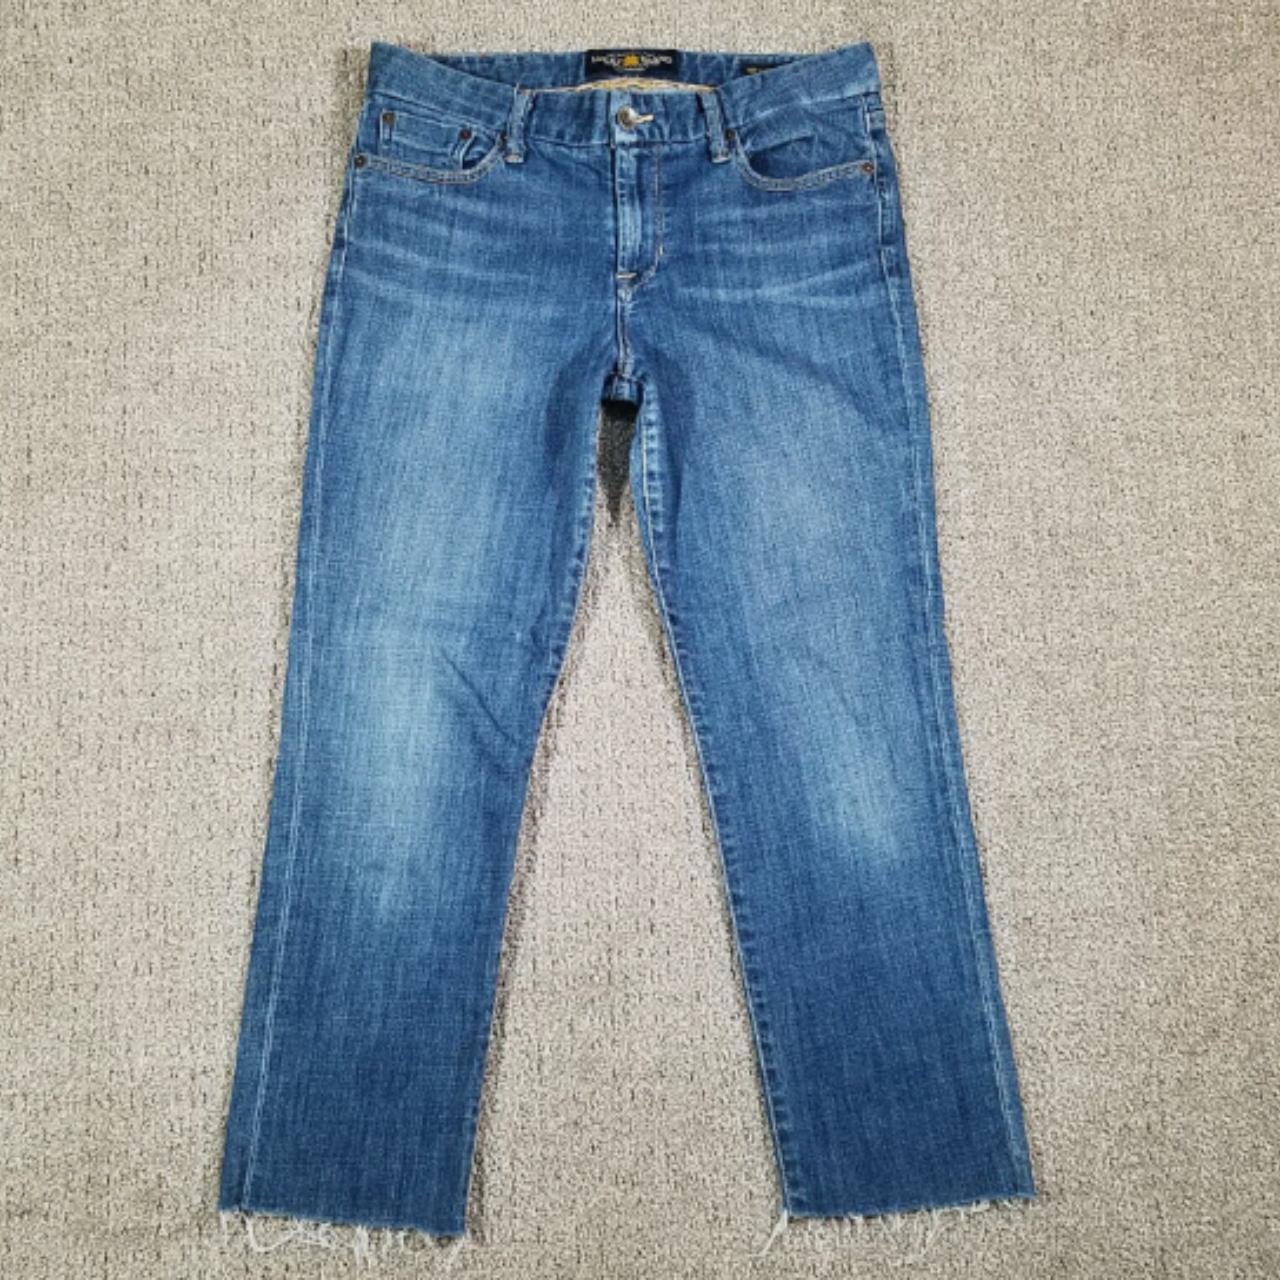 LUCKY BRAND Jeans Womens 30 Blue Sweat Jean... - Depop